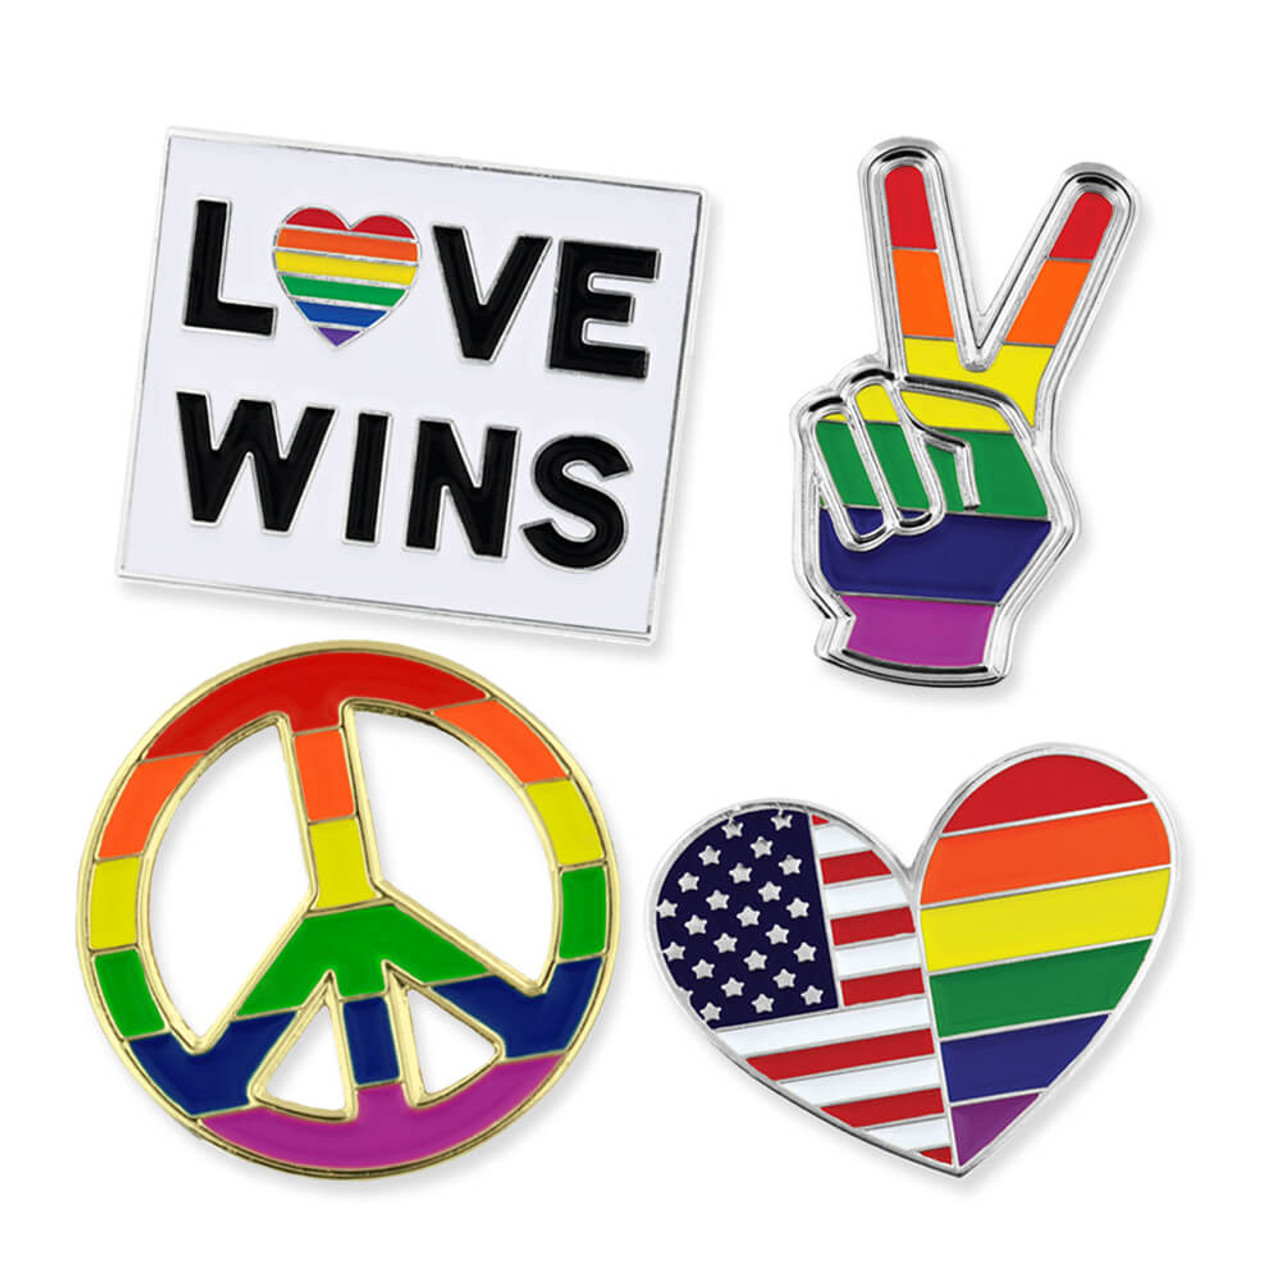 Peace Love Pride Tote Bag Pride Tote Bag Pride Gift Bag Gay 